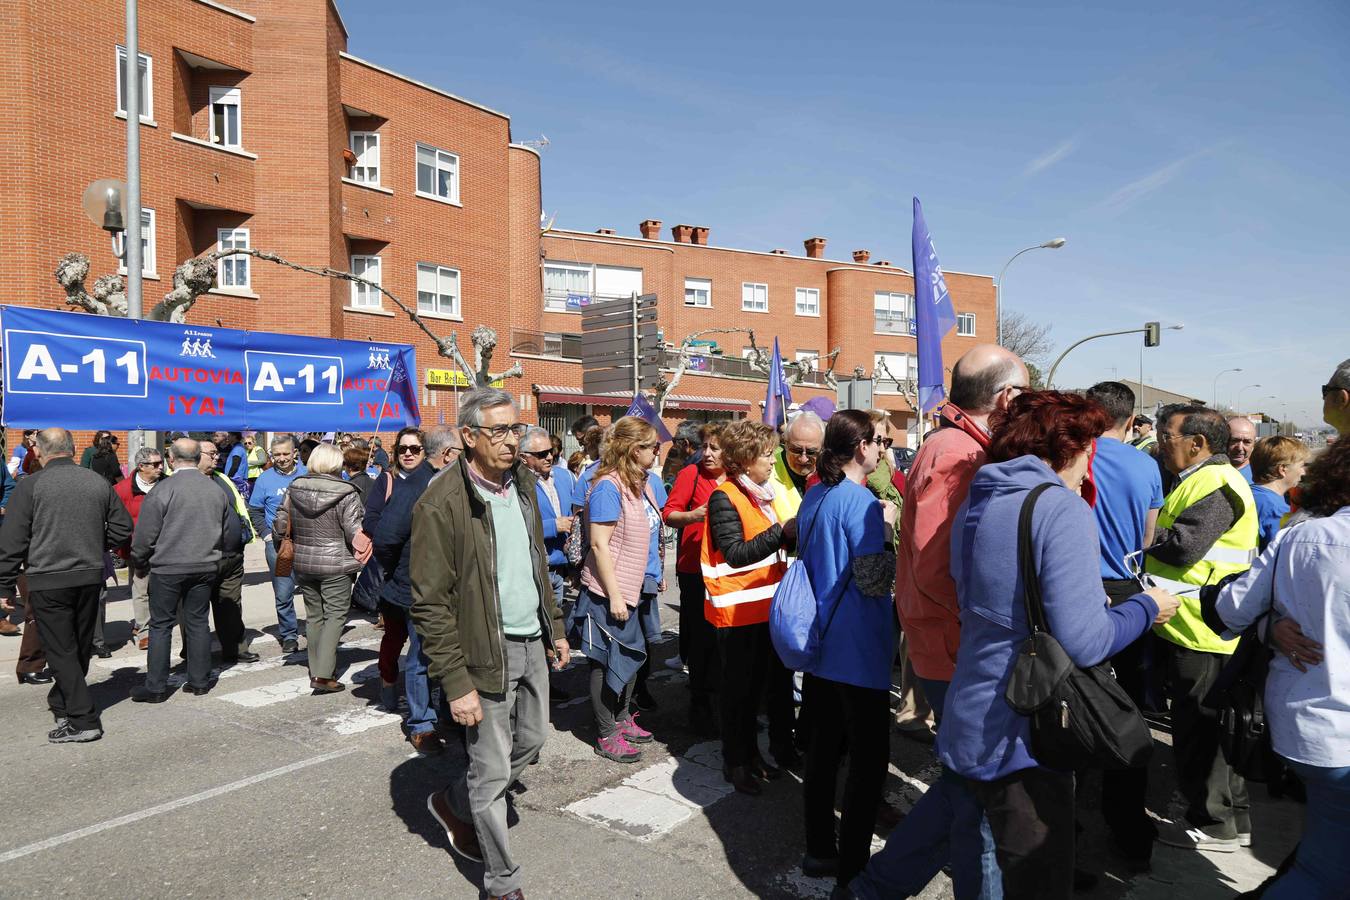 La próxima movilización será el 31 de marzo cuando A-11 Pasos se sumará a la manifestación que se celebrará en Madrid bajo el lema 'La revuelta de la España vacía'